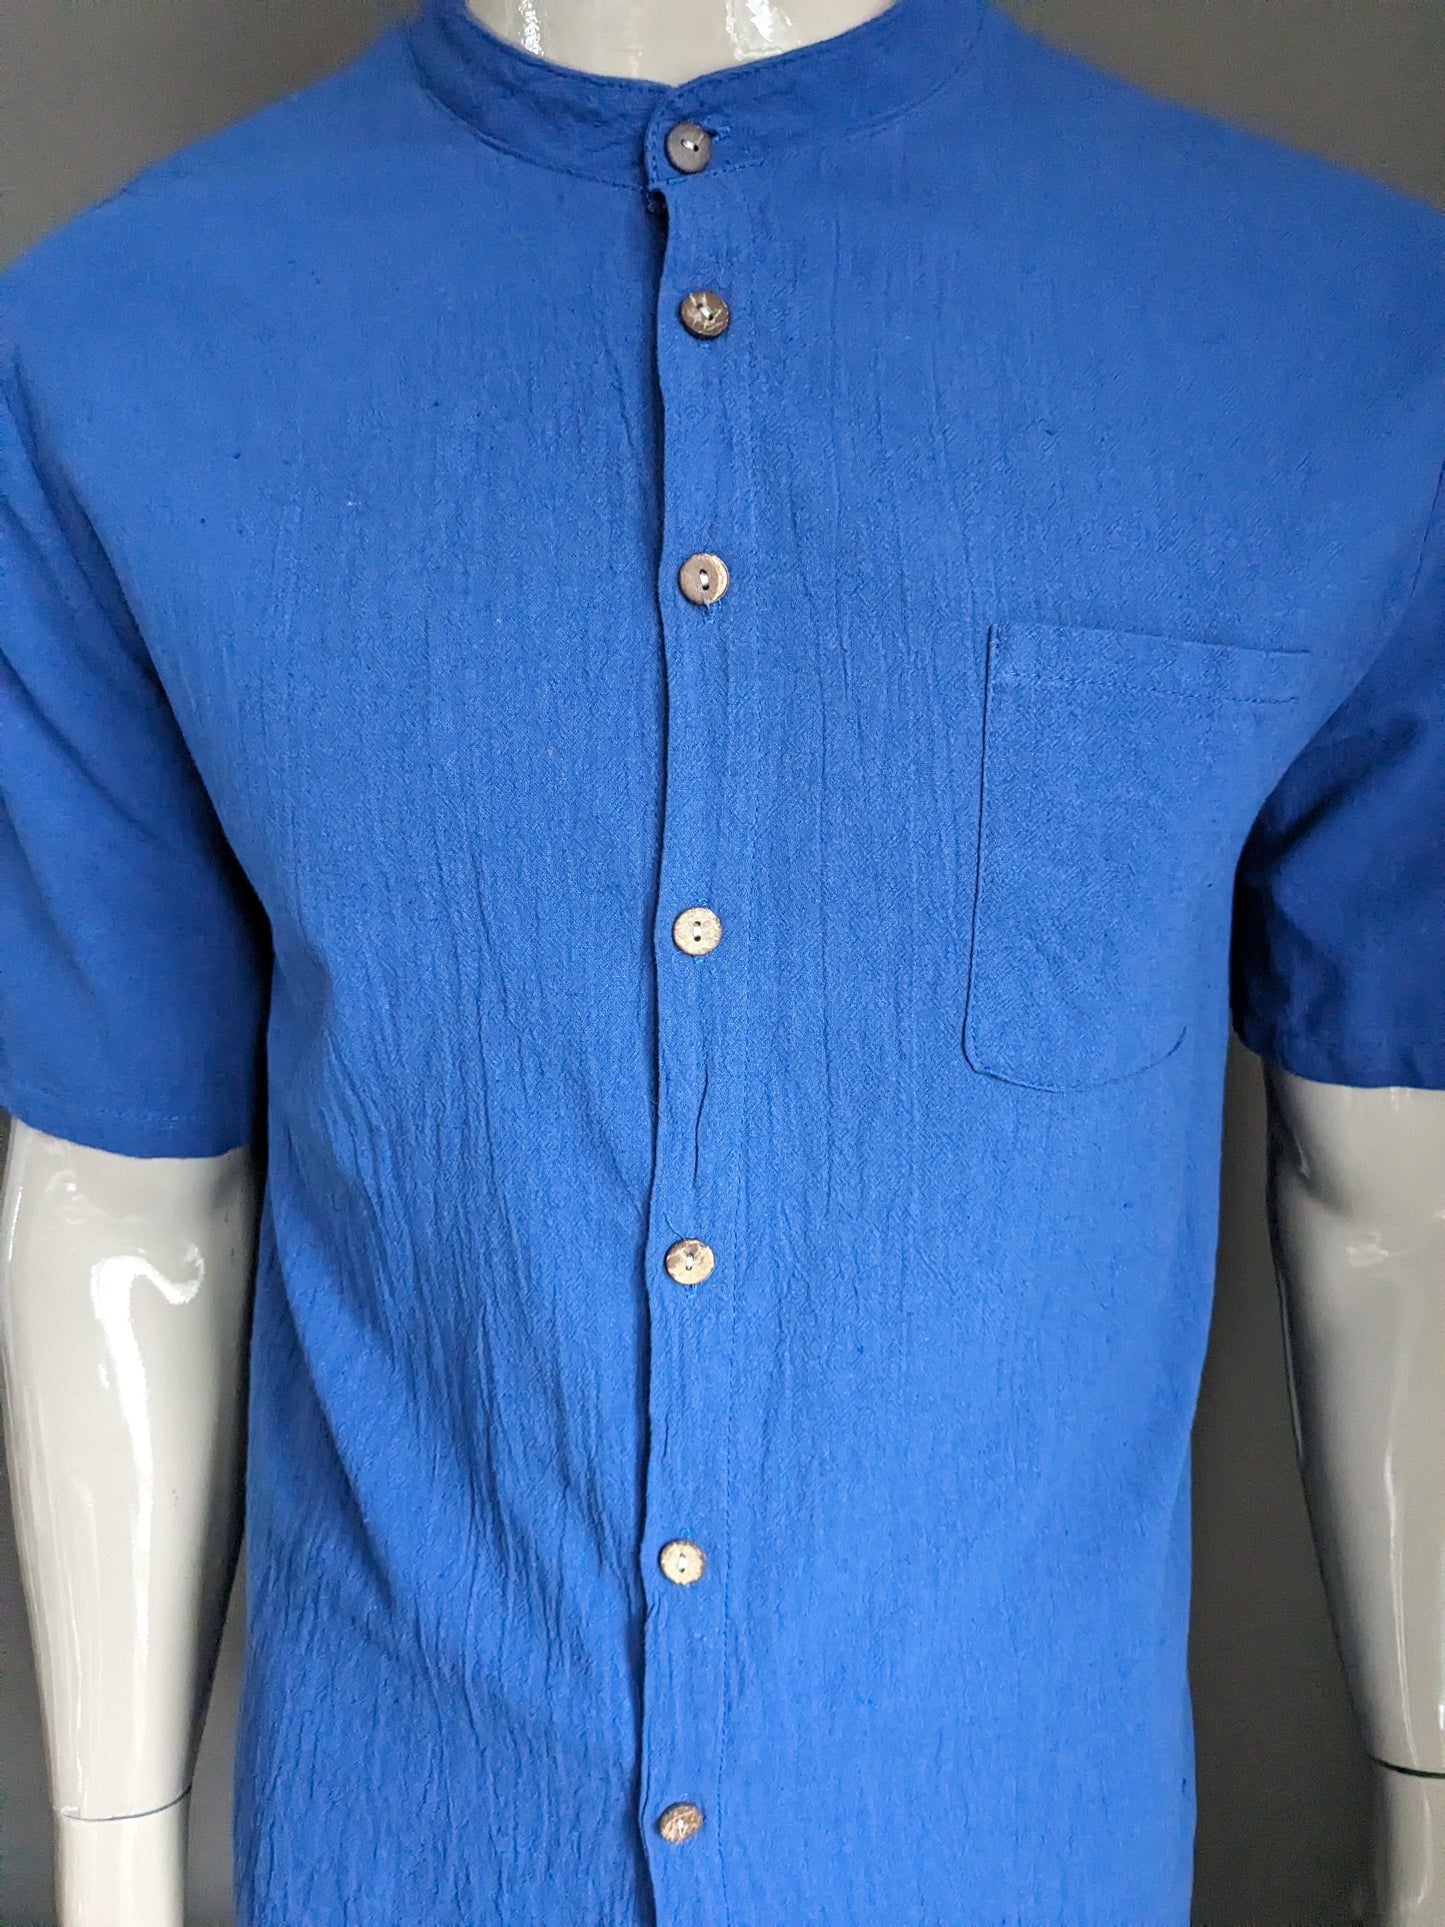 Camisa vintage manga corta con mao / cuello elevado. Azul. Talla M.